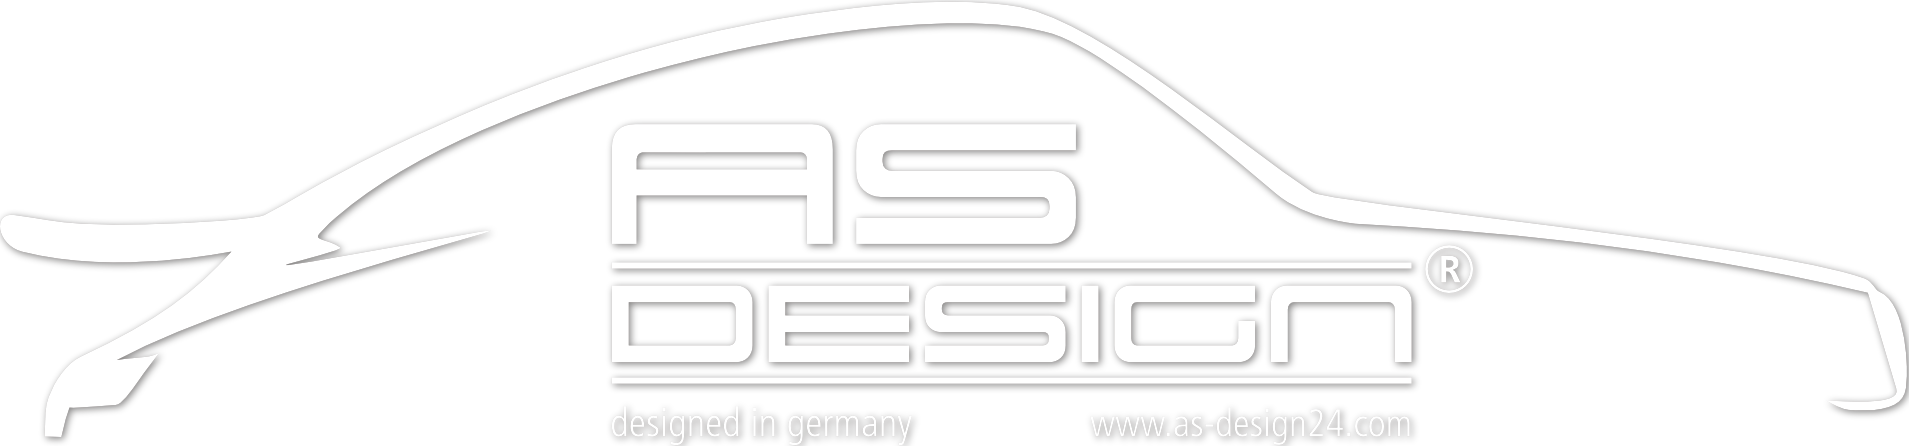 AS-Design Logo